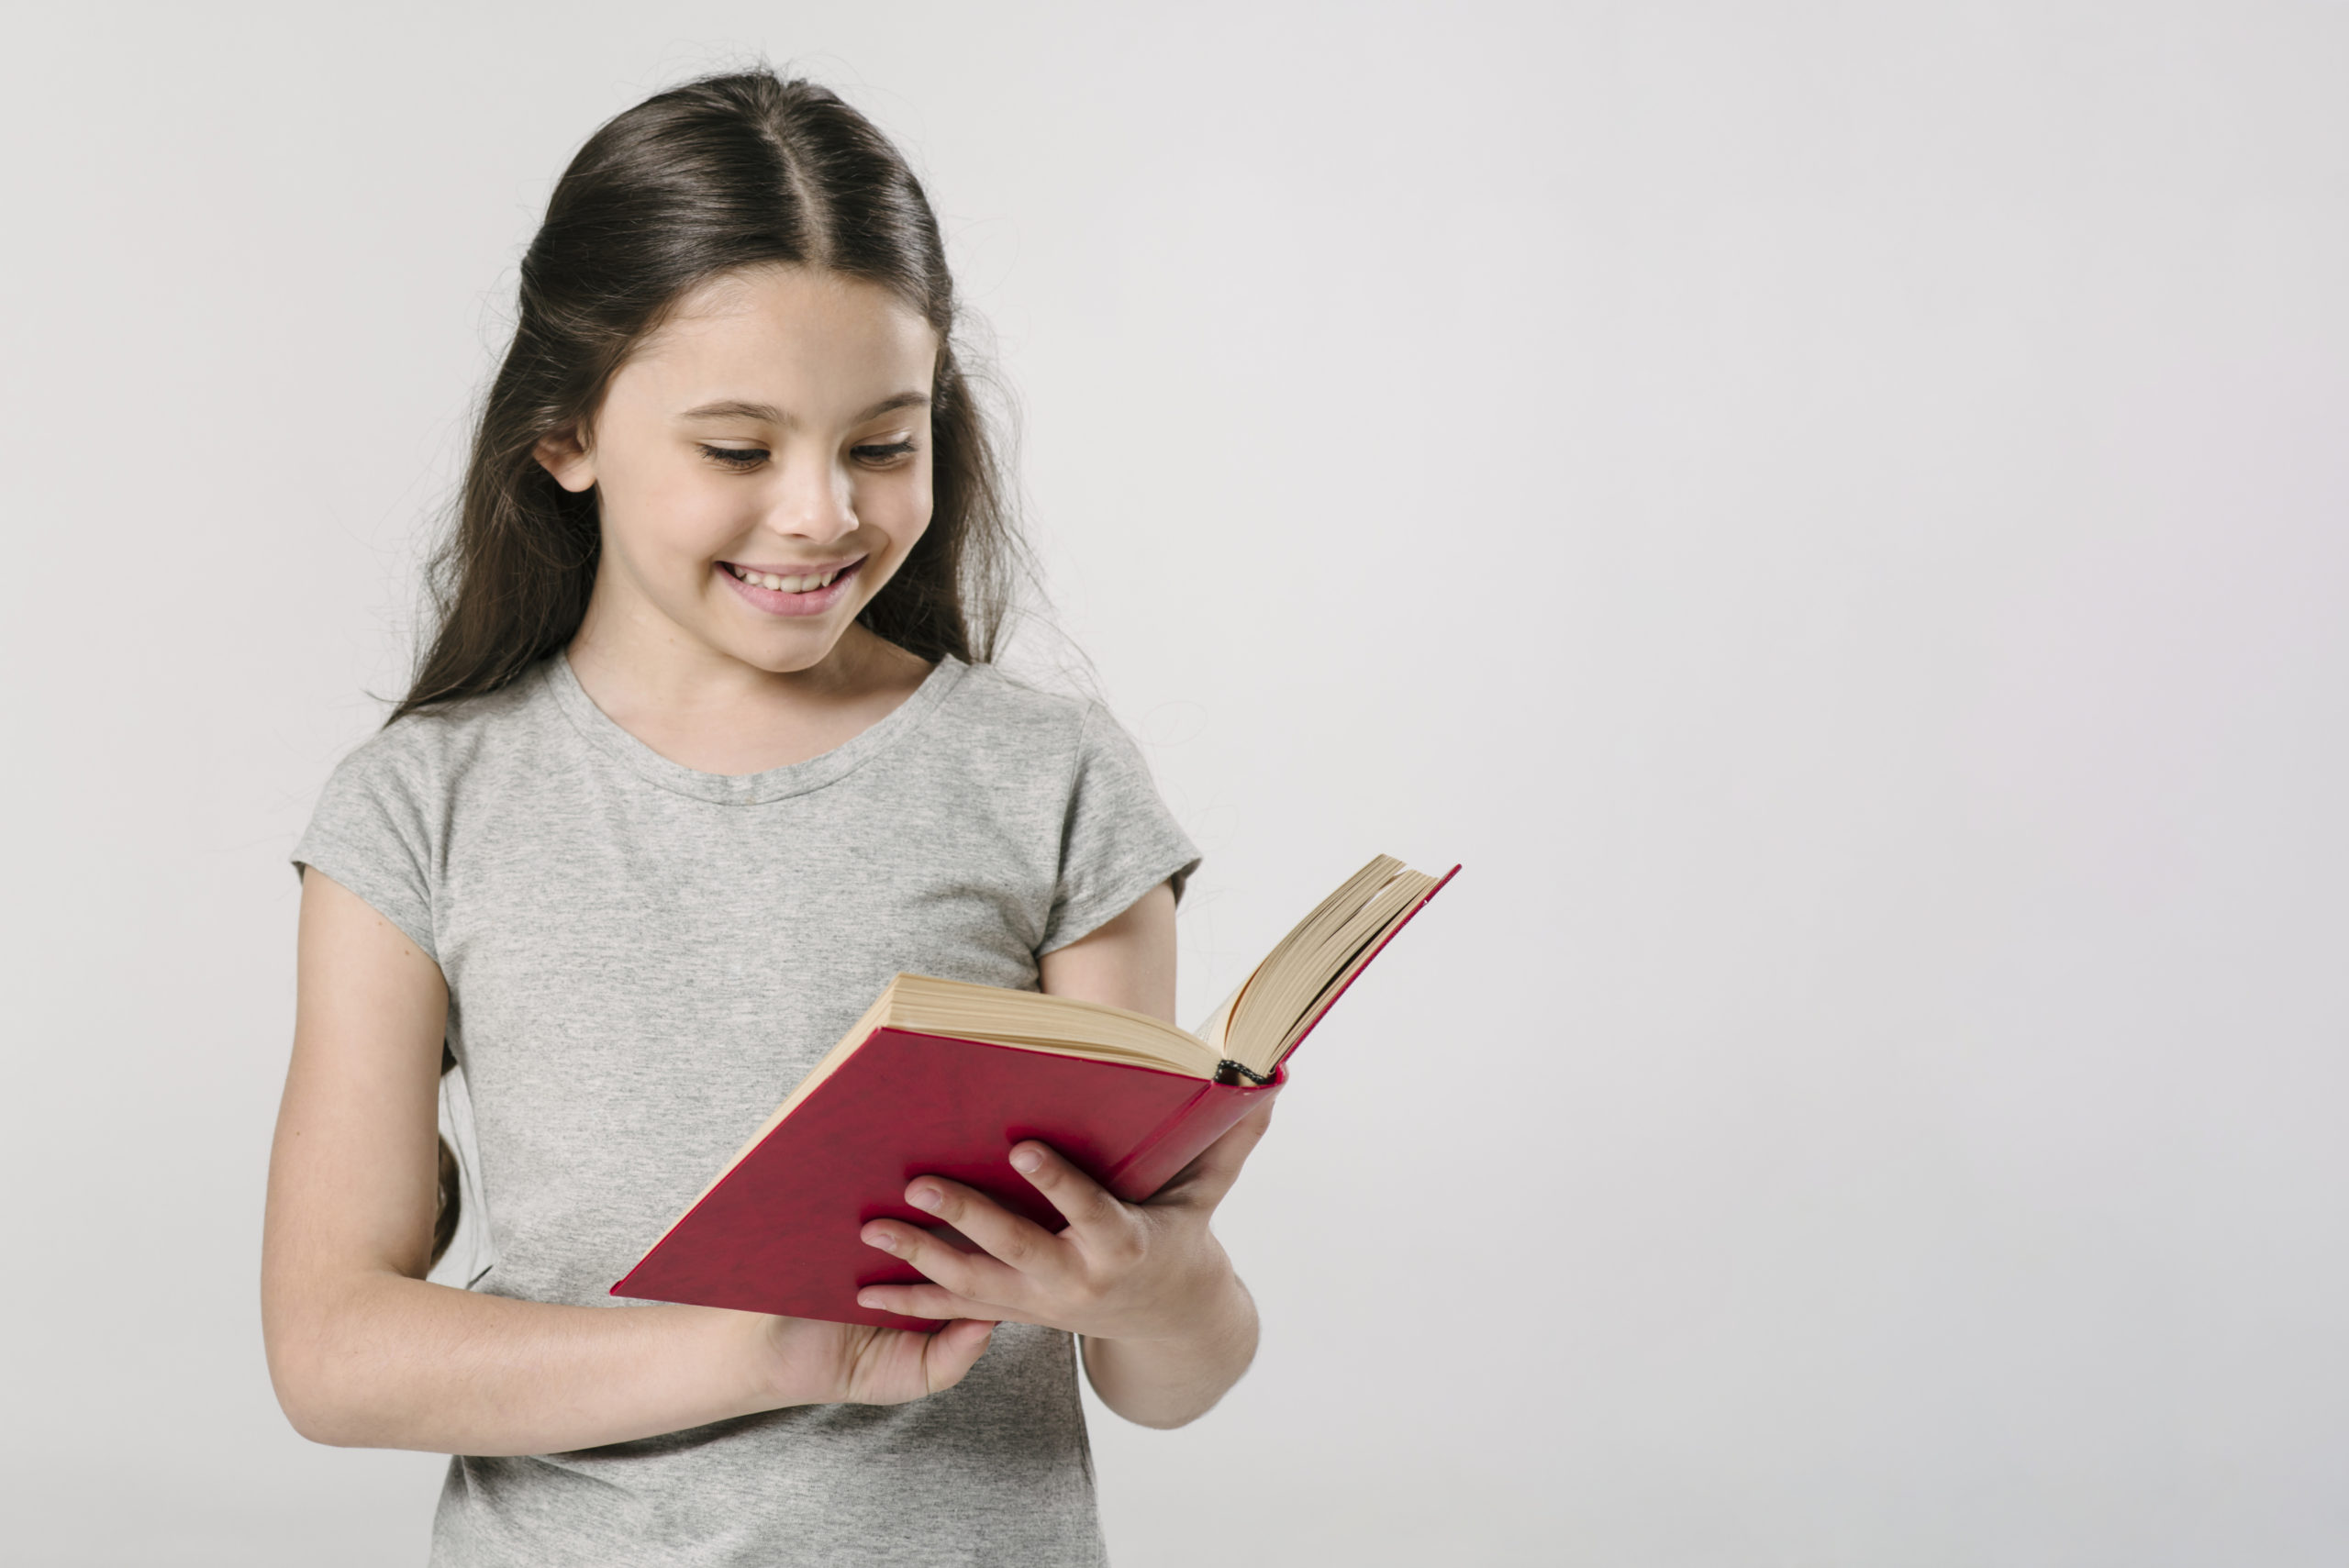 Читать книги ученик 10. Ребенок с книгой в руках. Книги для детей. Книжки руками детей. Девочка читает книгу.